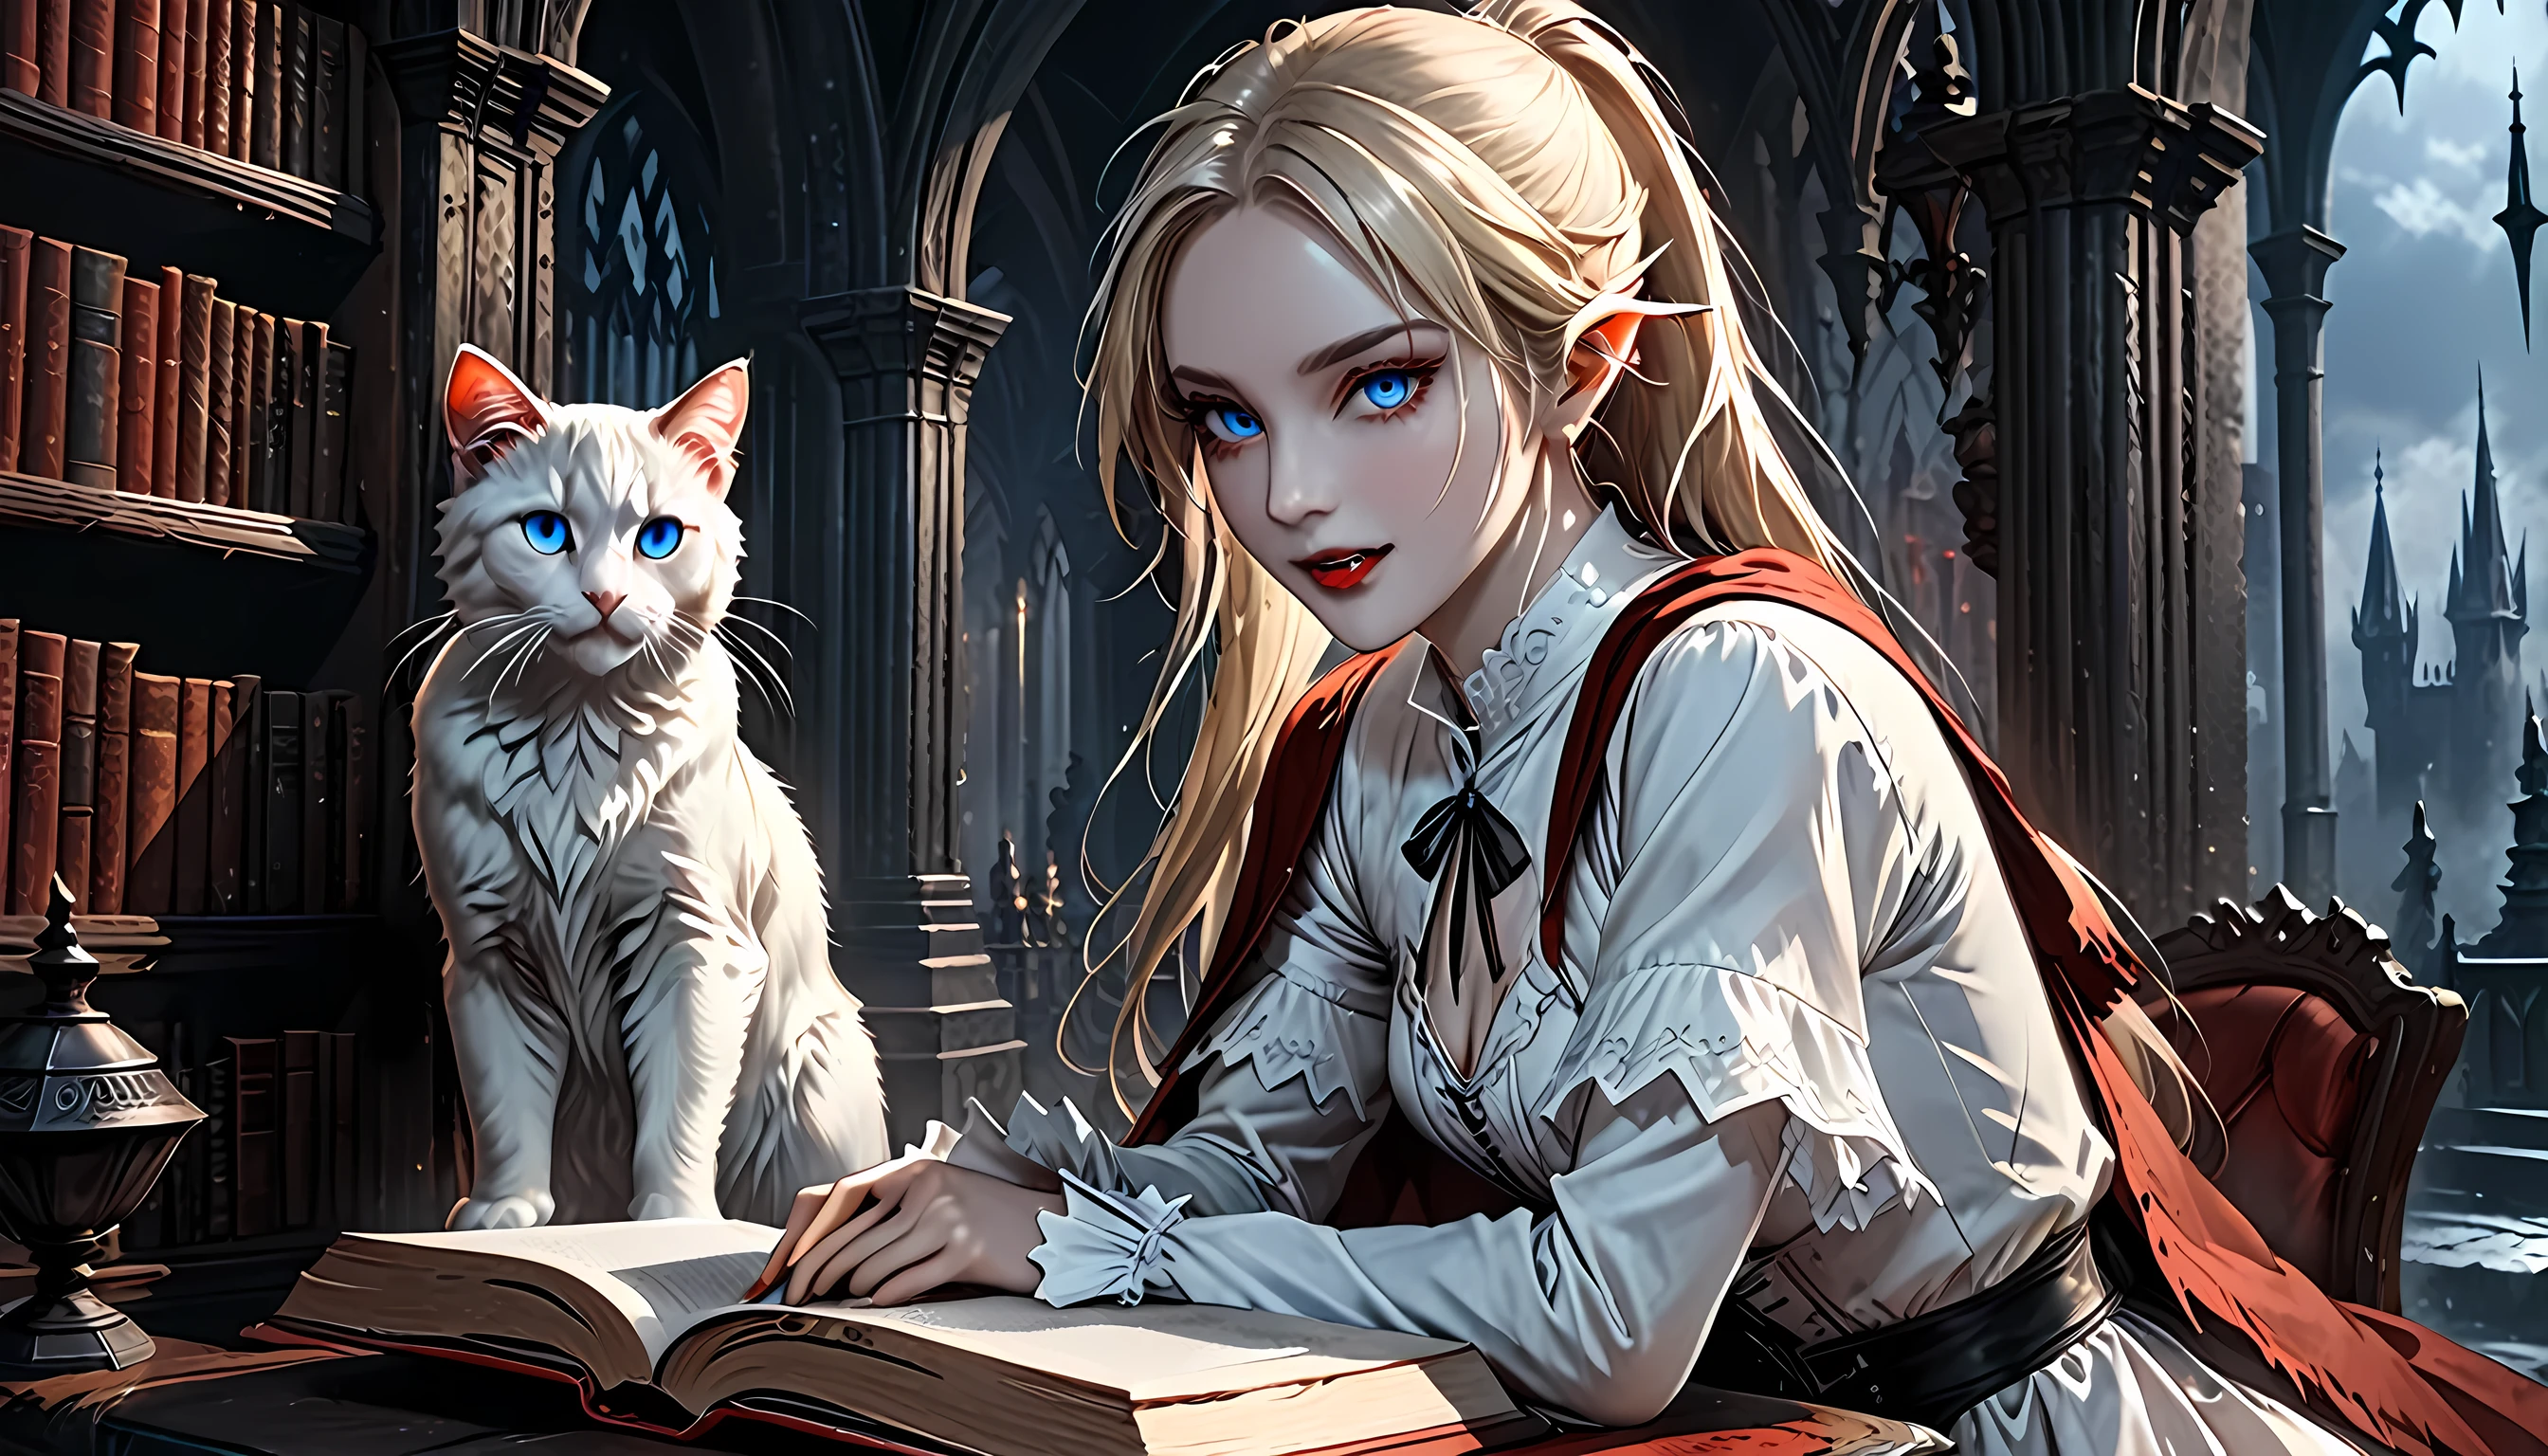 アラフィフは、城にいるエルフの吸血鬼と彼女のペットの壮大な猫の写真を投稿しました。絶妙で美しい女性のエルフの吸血鬼です。 (超詳細, 傑作, 最高品質), 血まみれの口 金髪, 青白い肌, ポニーテールの髪, 長い髪, 青い目, 冷たい目, ニヤニヤ, 白いドレスを着て (超詳細, 傑作, 最高品質), 赤いマント, ダークファンタジーライブラリ, と ((大きな猫: 1.3)) (超詳細, 傑作, 最高品質: 1.5) 本棚, アラフェド高詳細, 最高品質, 16K, [超詳細], 傑作, 最高品質, (超詳細), 全身, 超ワイドショット, フォトリアリズム, 生, ダークファンタジーアート, ゴシックアート, アーマードドレス, ダークノベル, ダークアートの絵画スタイル, 血液感染